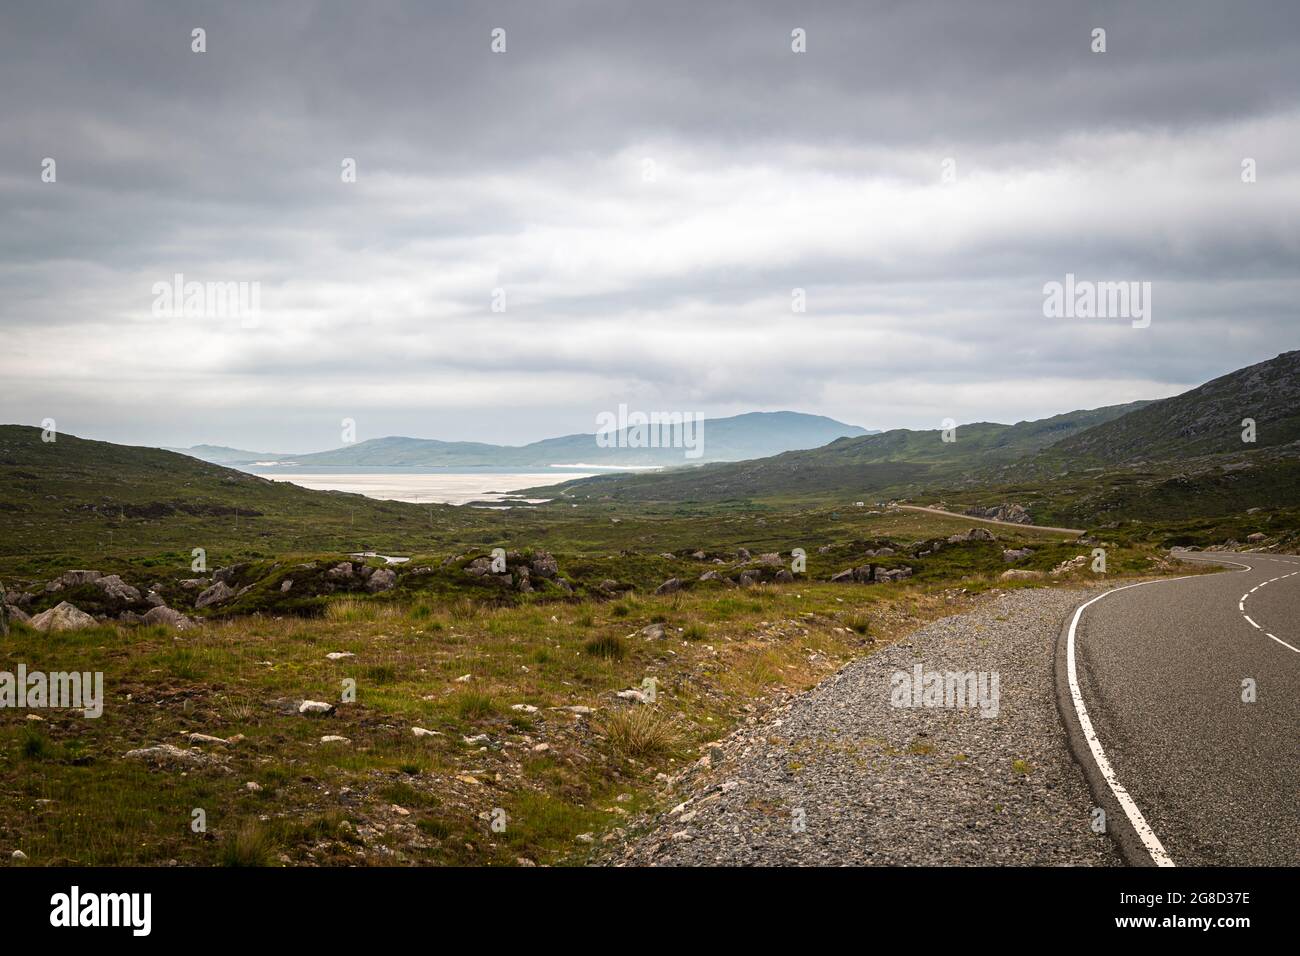 Un'immagine HDR di 3 riprese estive dell'A859, prima vista e strada di avvicinamento a Luskentire Beach, Isola di Harris, Western Isles, Scozia. 29 giugno 2021 Foto Stock